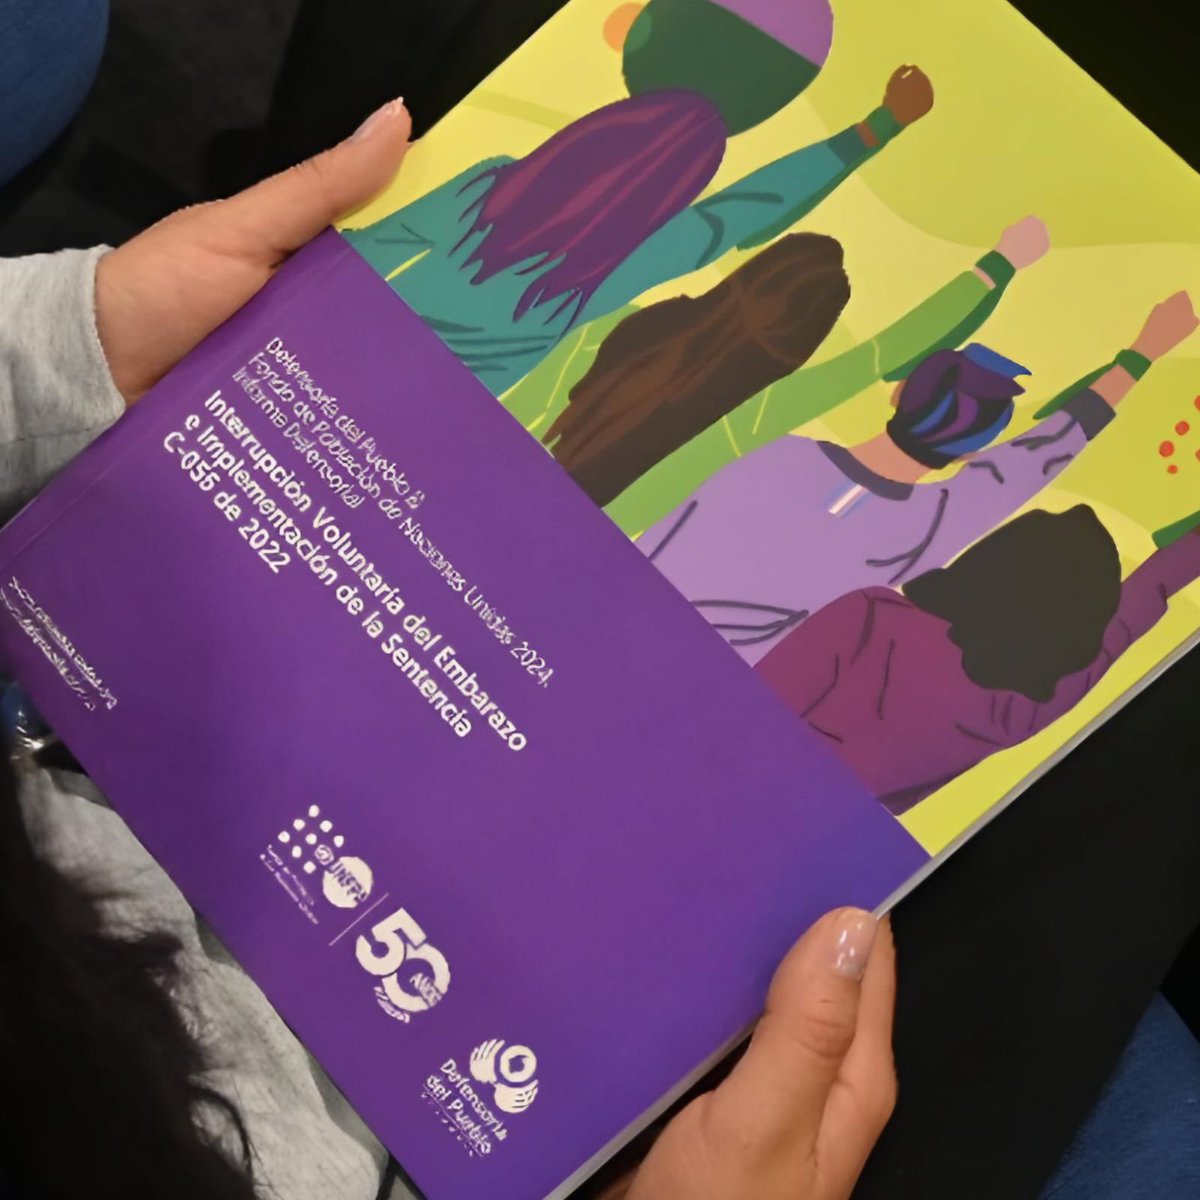 🟢 UNFPA Colombia y la Delegada de Derechos de las Mujeres de @DefensoriaCol presentan el Informe Defensorial sobre la Interrupción Voluntaria del Embarazo y la Sentencia C-055 de 2022. El informe aborda los derechos reproductivos, analiza barreras y propone medidas para la